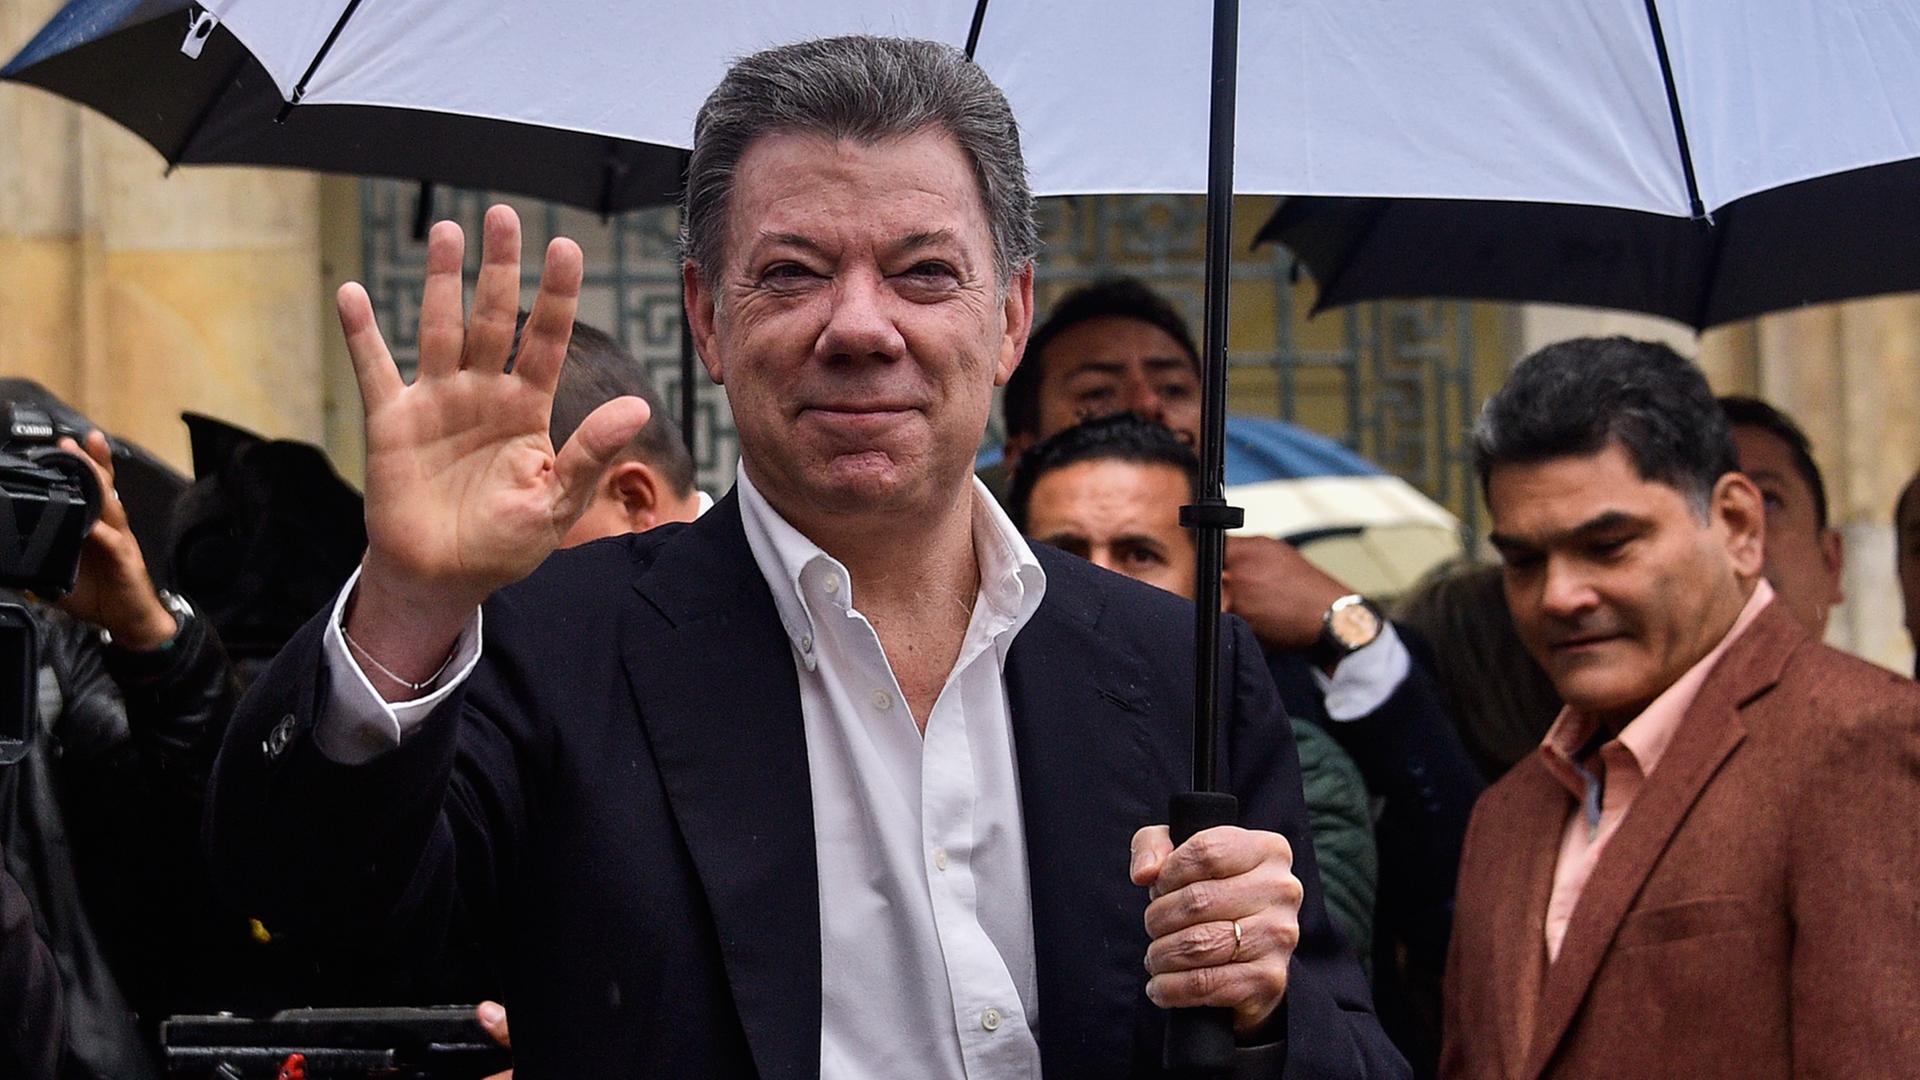 Der kolumbianische Präsident Juan Manuel Santos steht in einem dunklen Anzug und einem aufgespannten blauen Regenschirm mit mehreren Menschen zusammen.